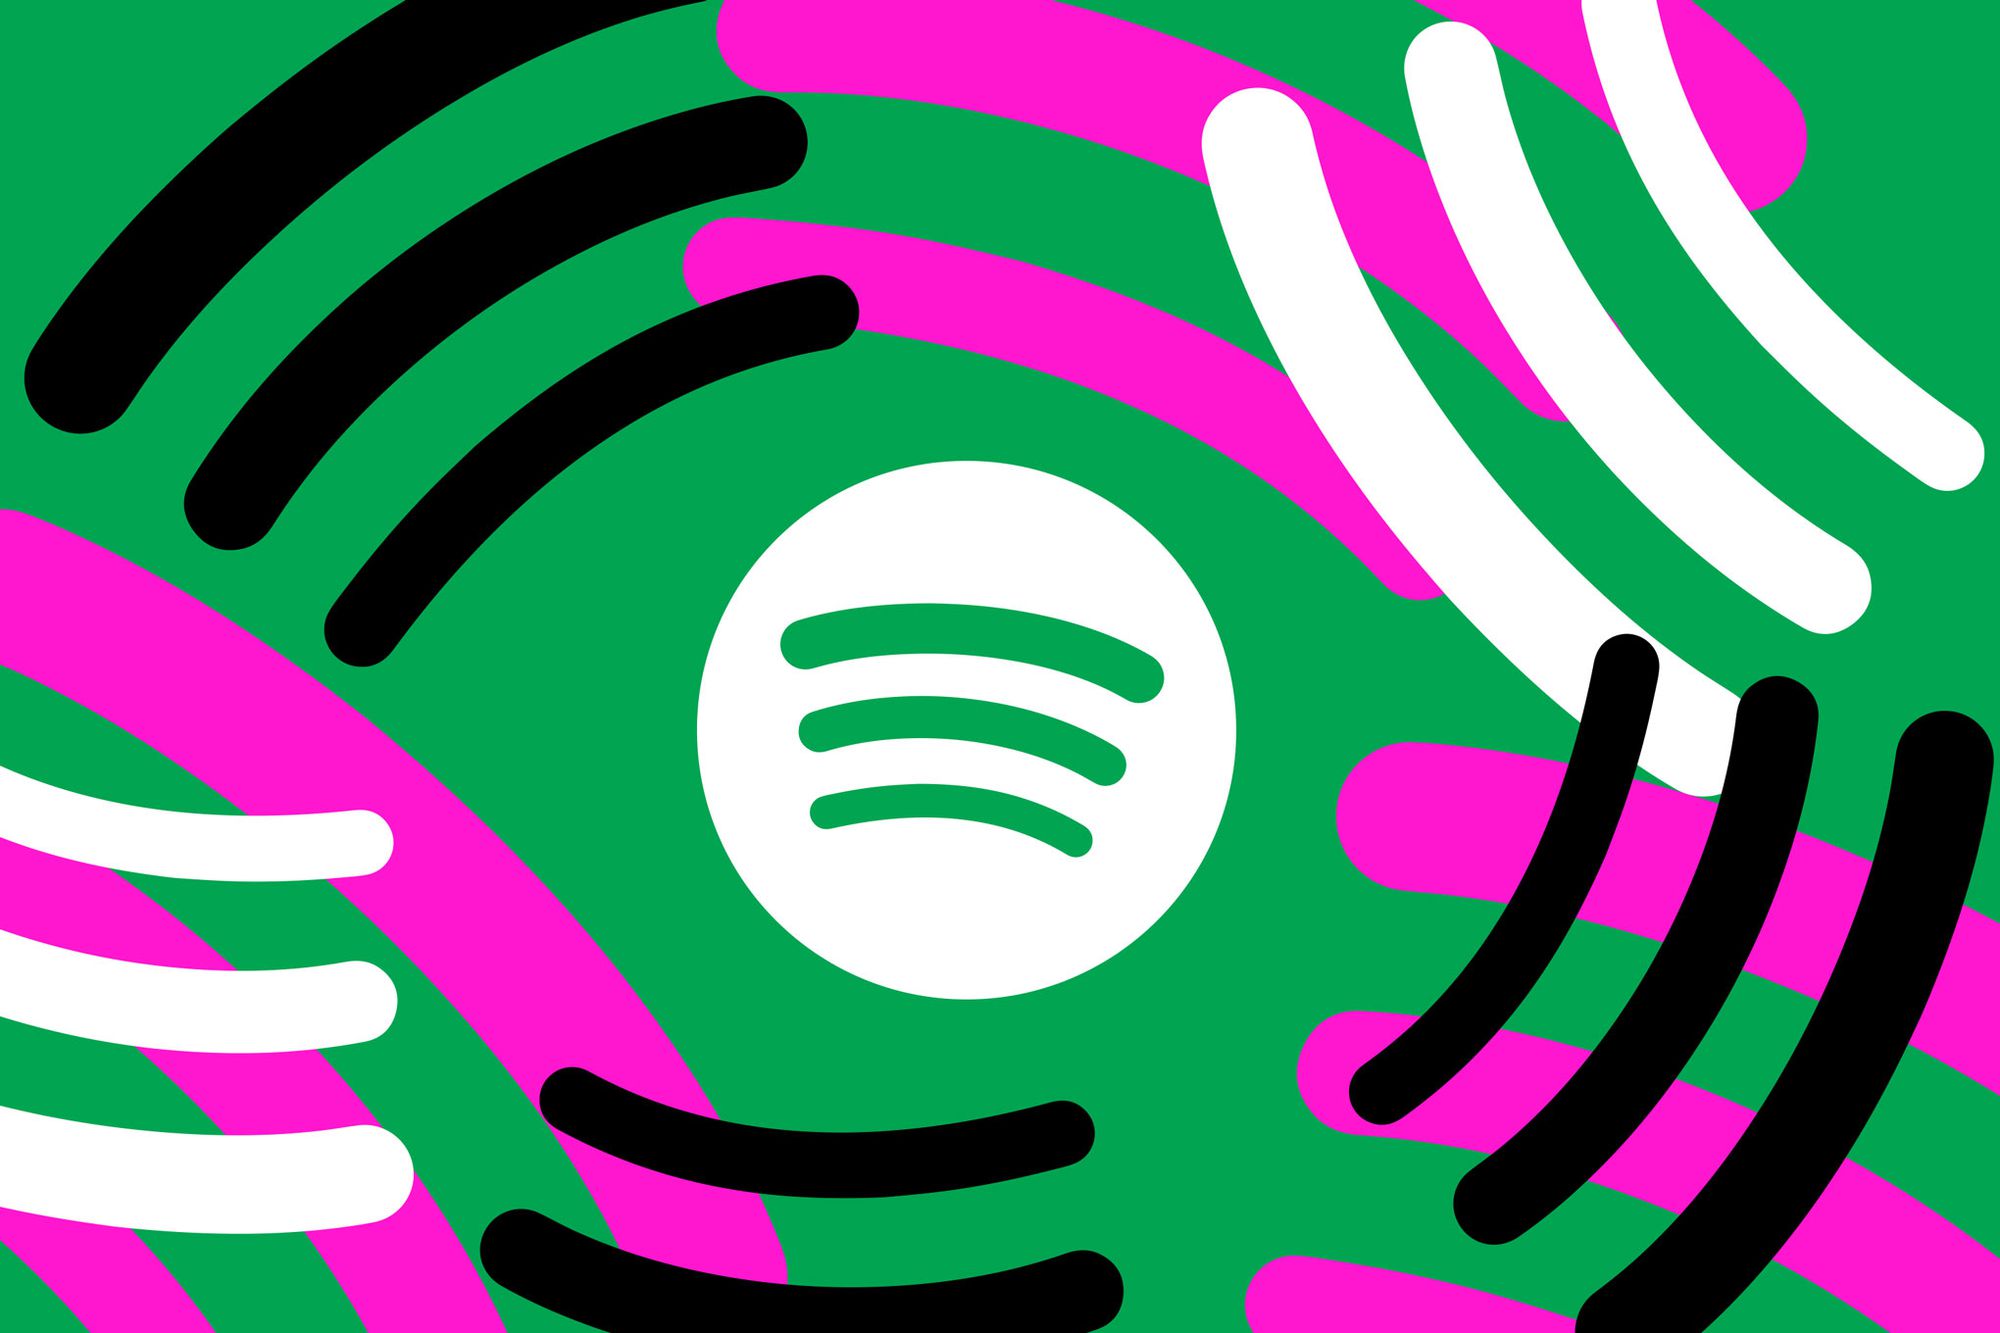 Verbesserung der Entdeckung von Podcasts und Hörbüchern: Die Synergie von Spotify und der KI von Google Cloud